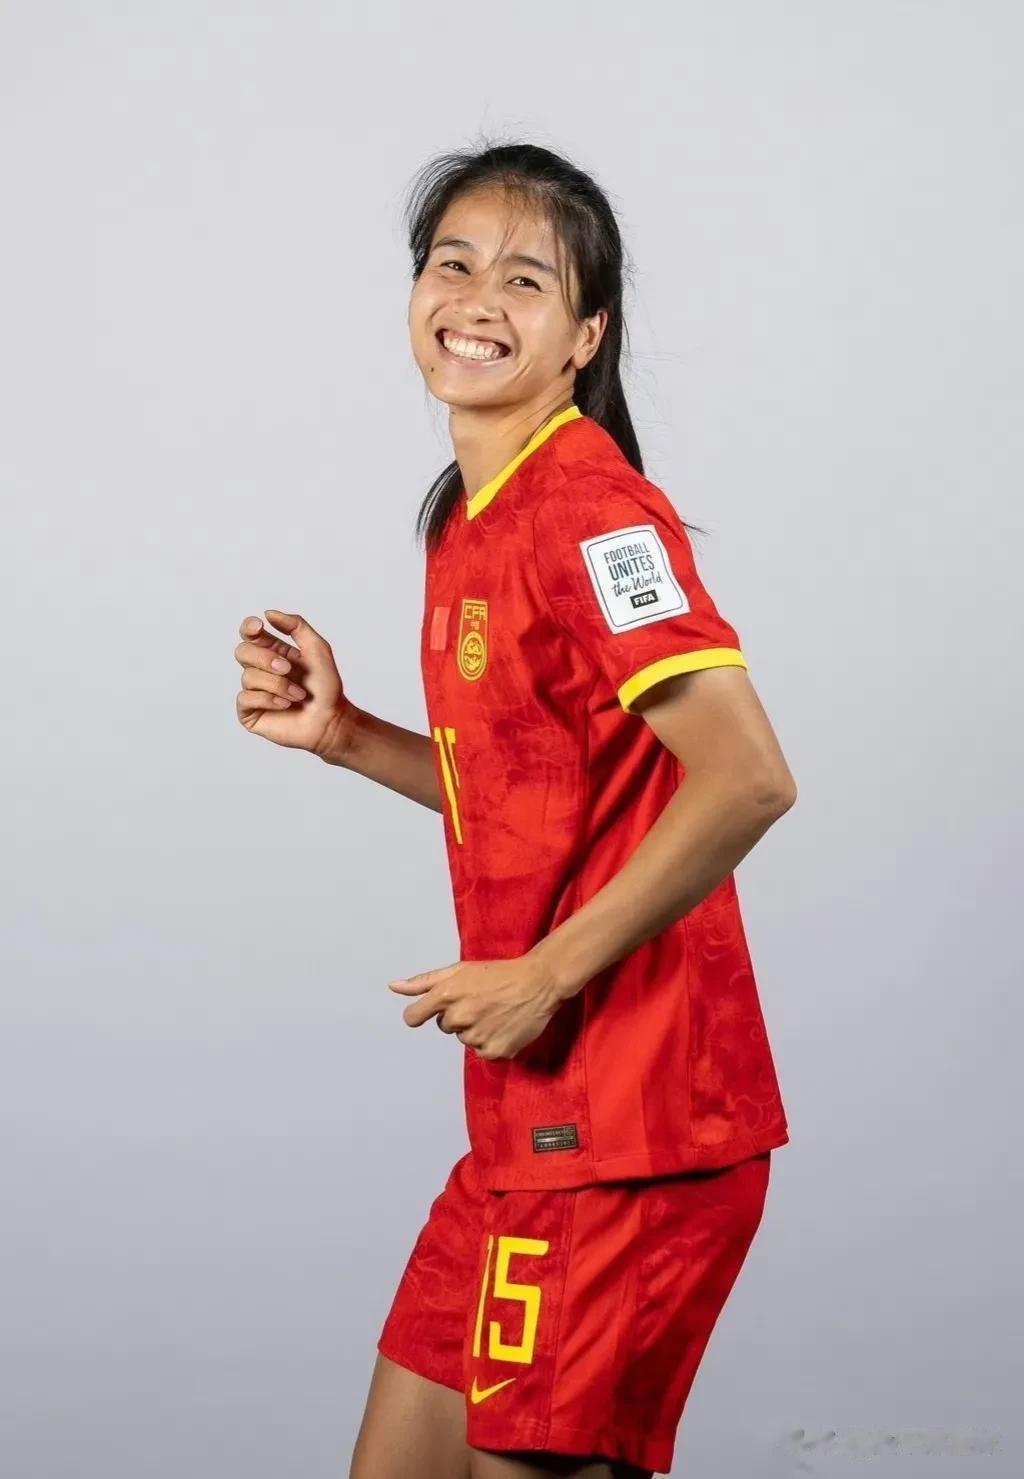 插播一条足球，给中国姑娘加油！祝中国姑娘22号世界杯首场凯旋！

分享一下姑娘们(3)